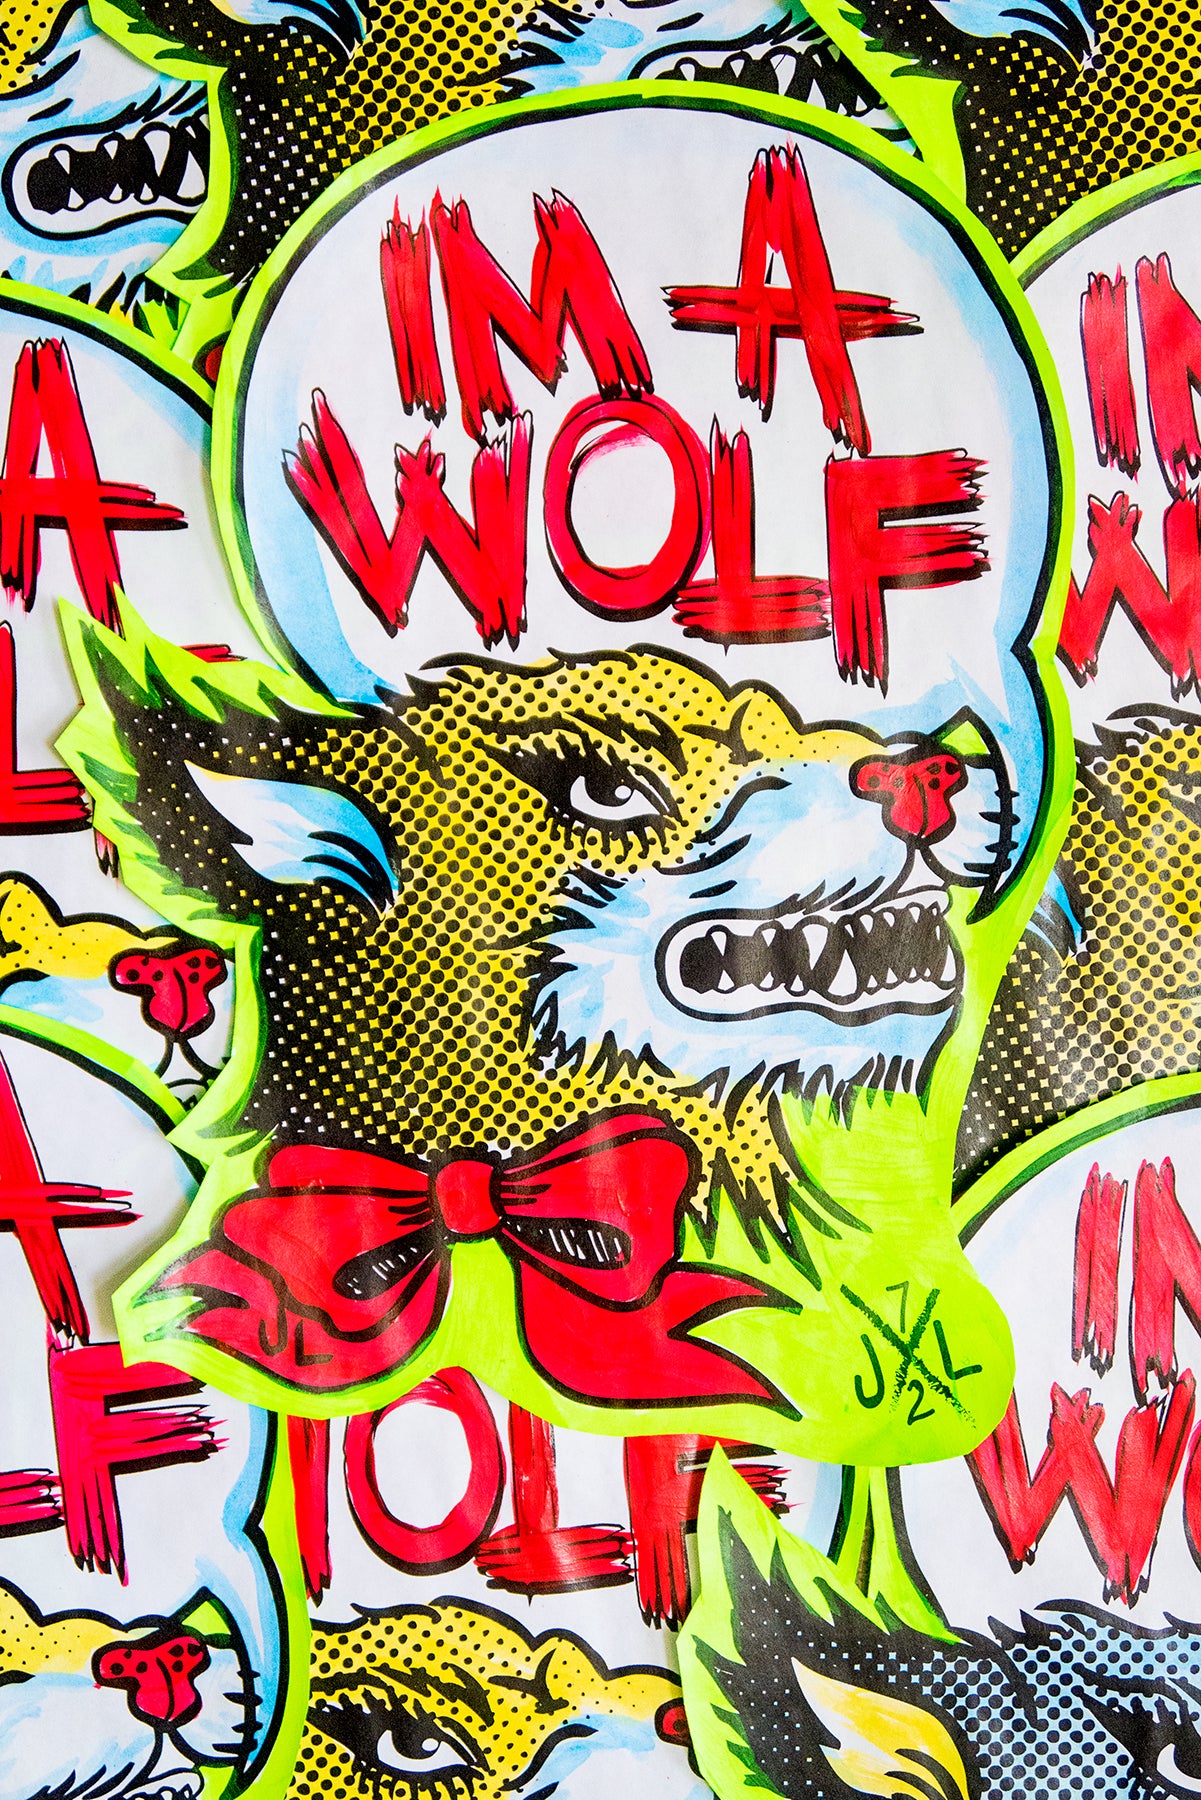 Im a wolf -Street art